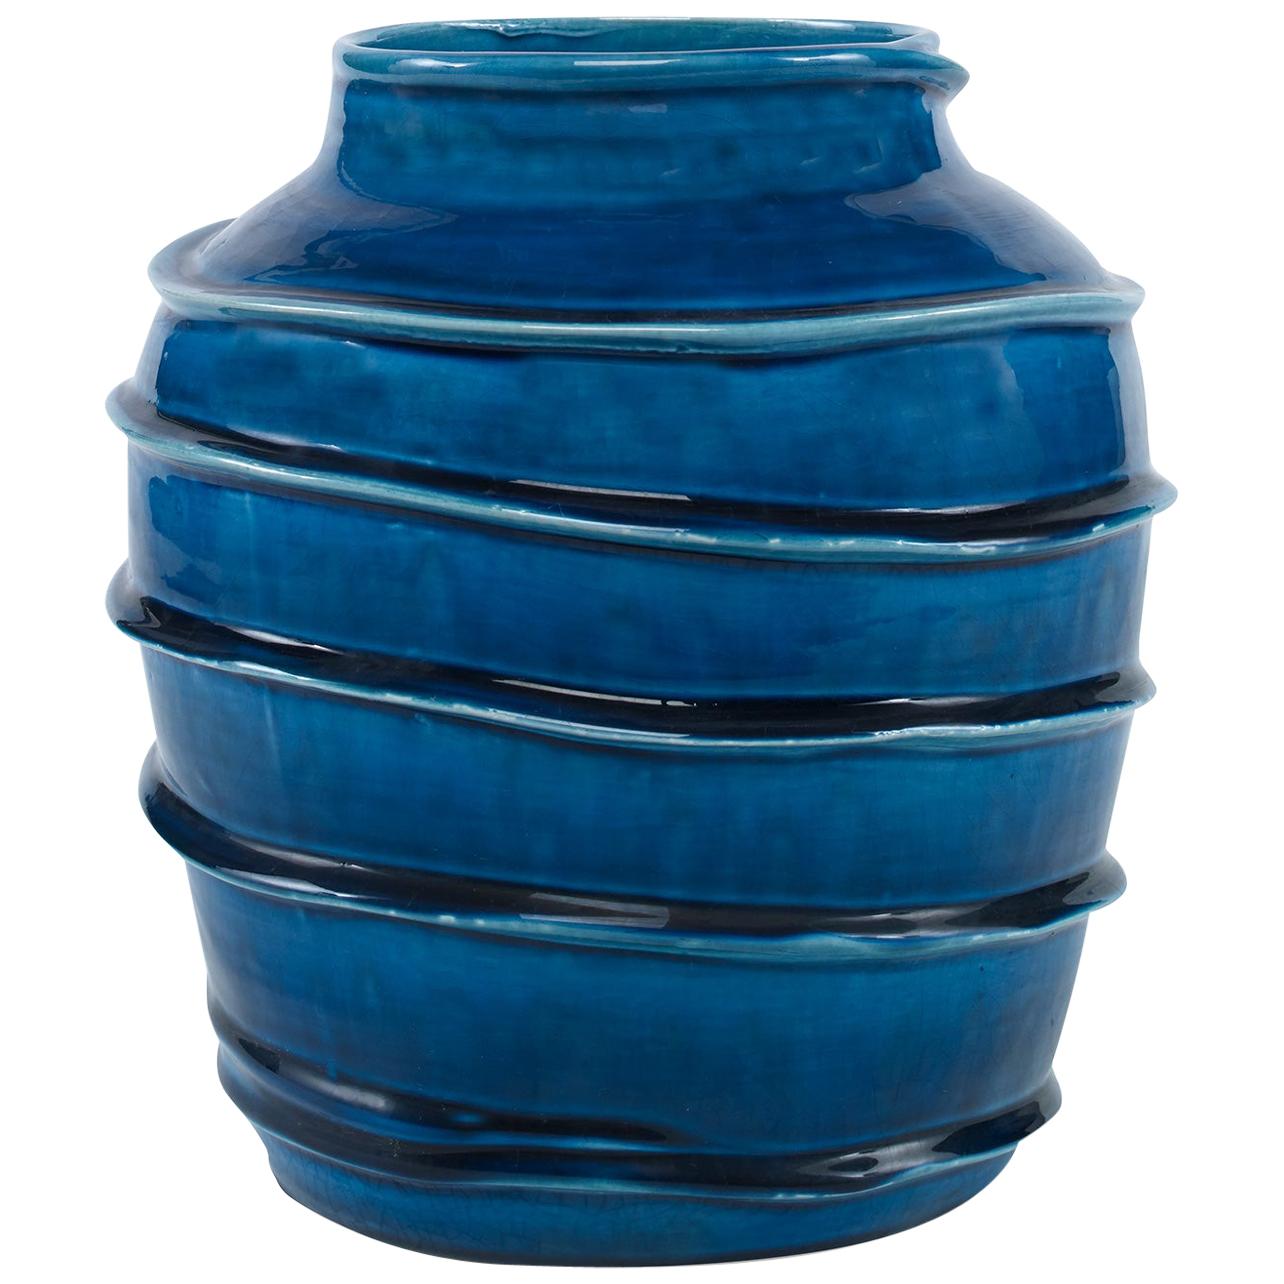 Kasey Vase in Dark Blue Ceramic by CuratedKravet